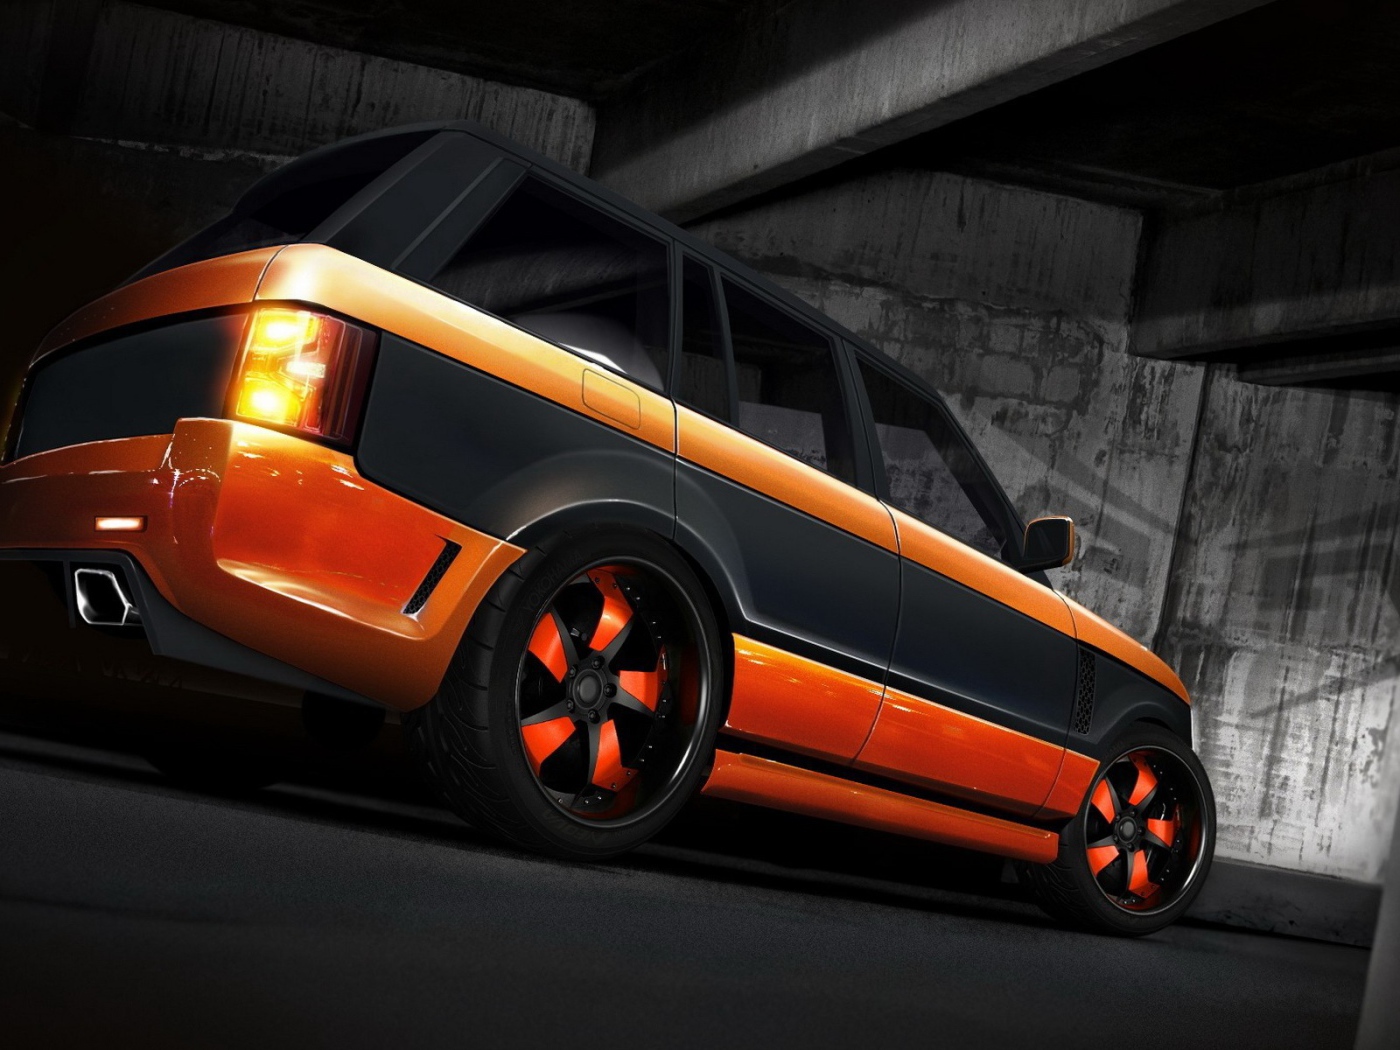 Оранжевый Land Rover с черной полосой